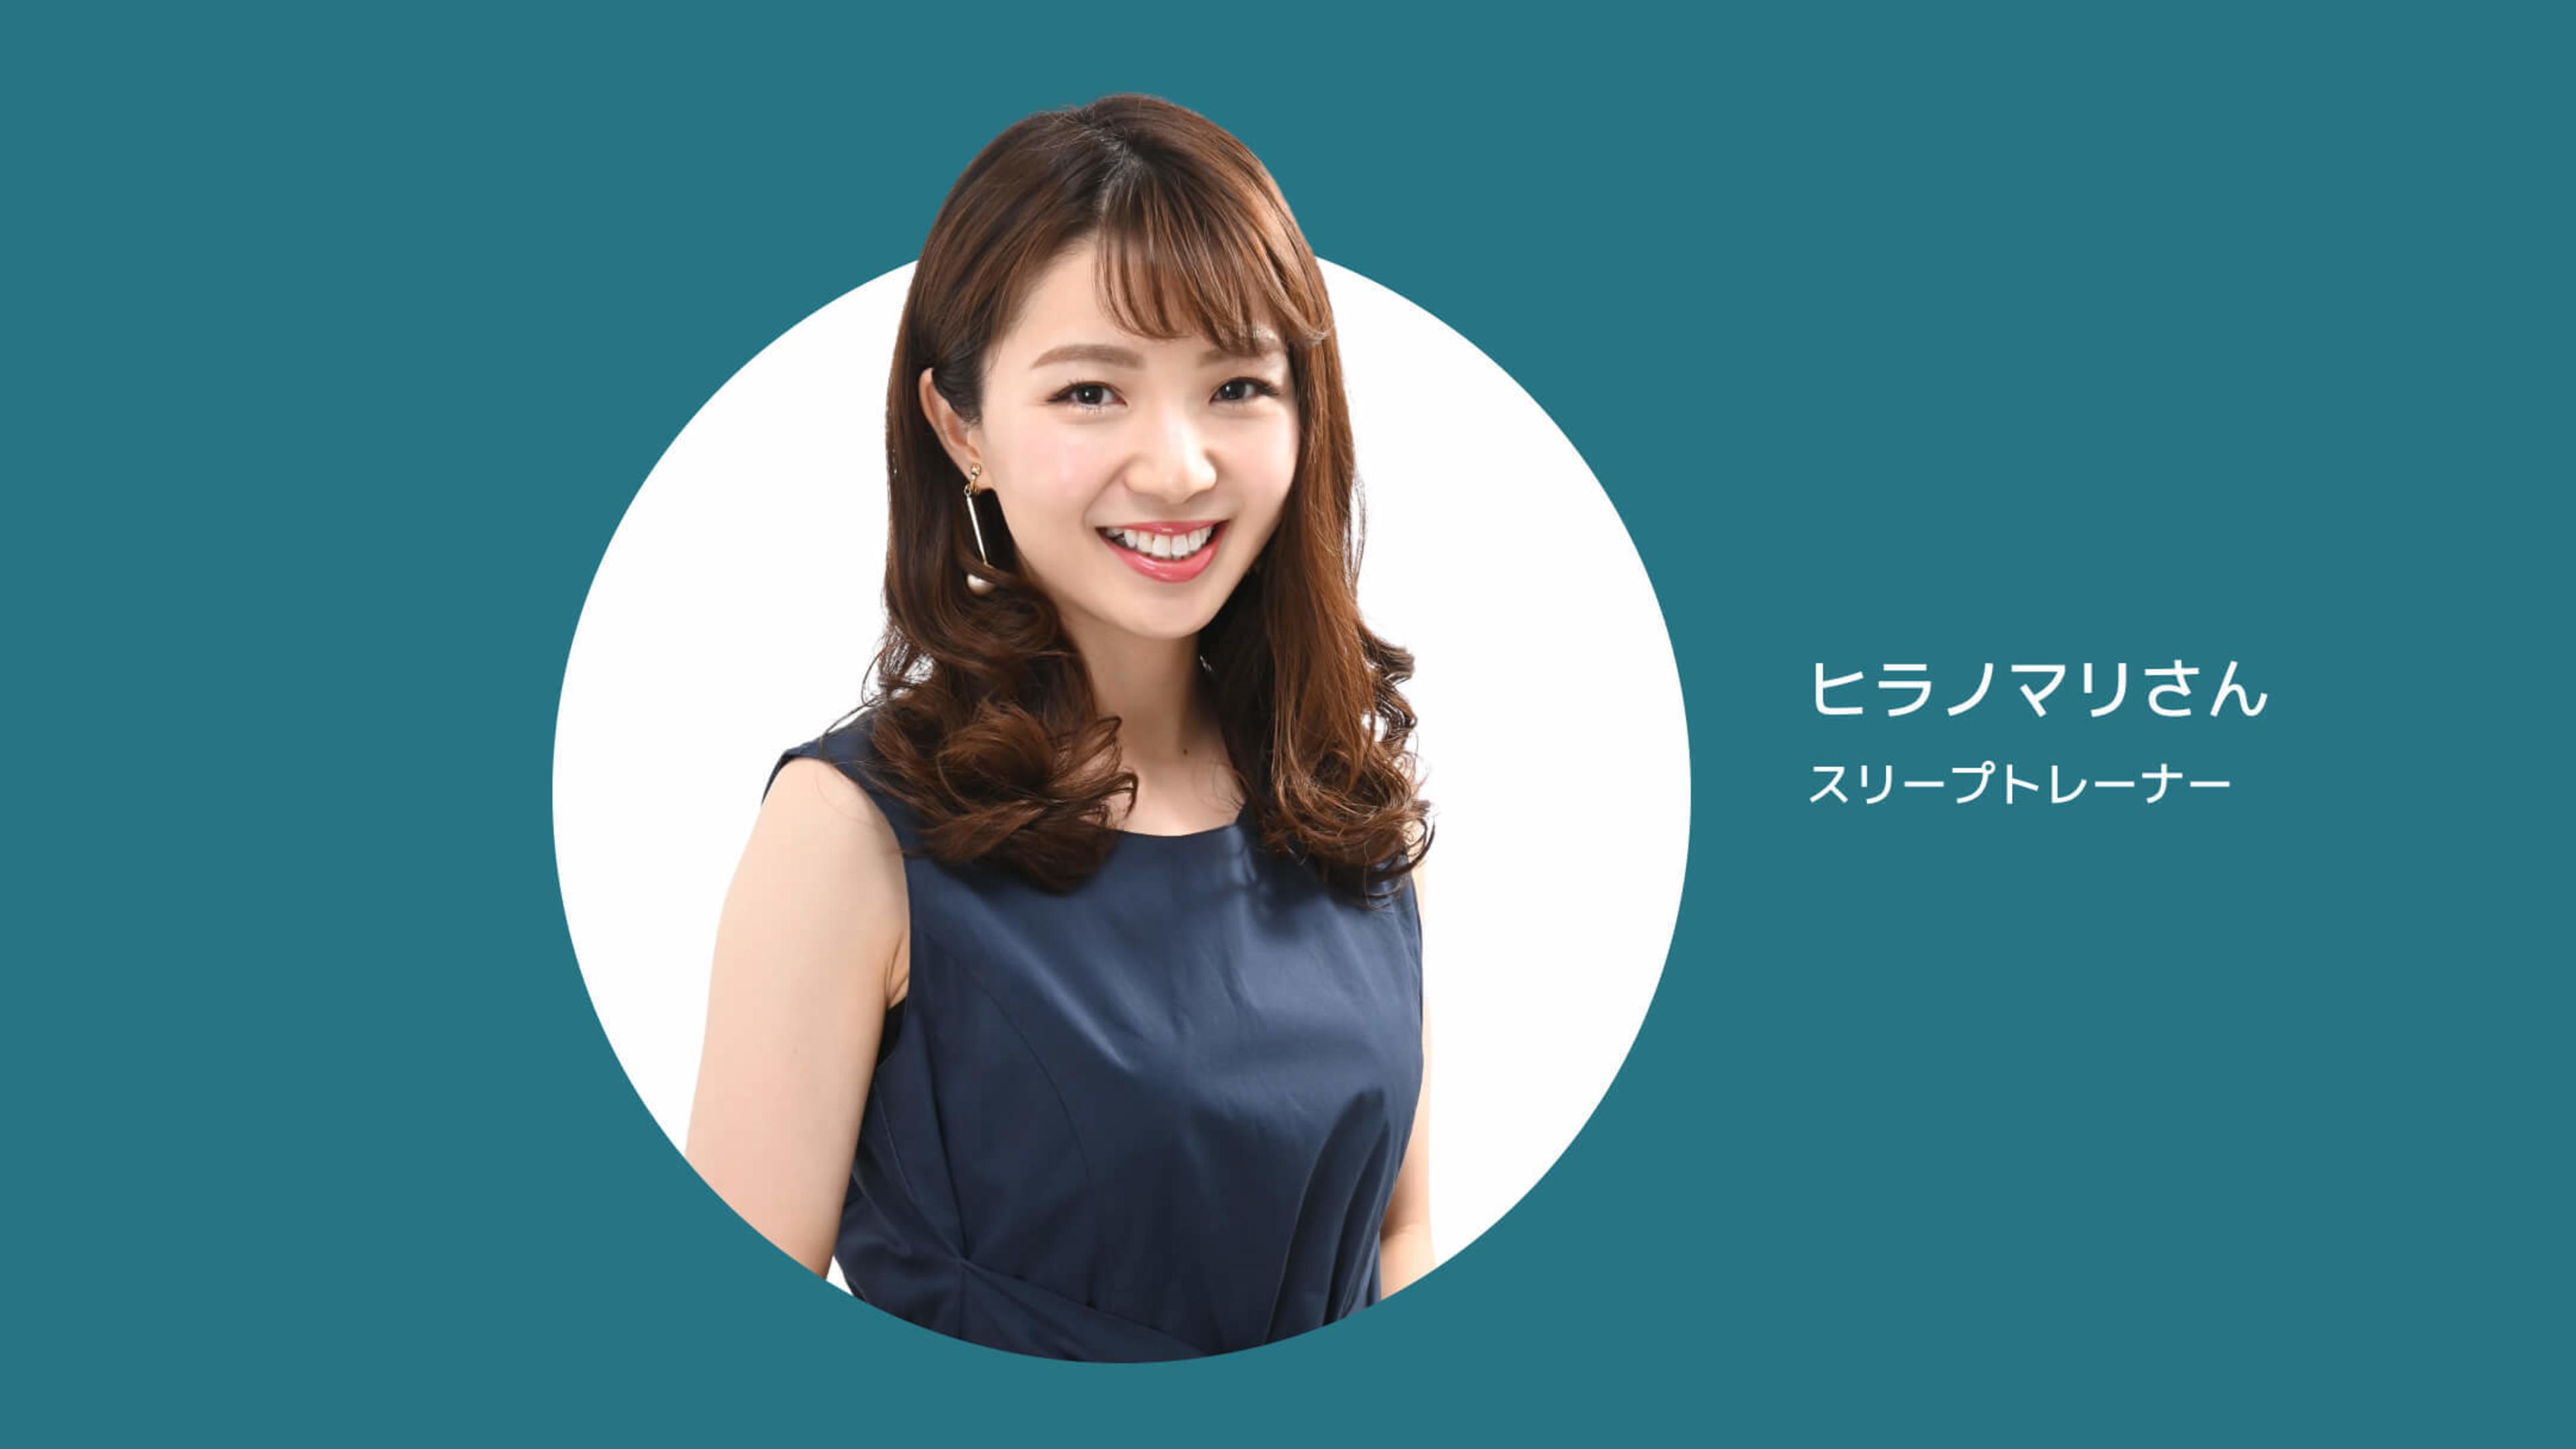 JP > Hero > Testimonial > Sleep Trainer Mari Hirano